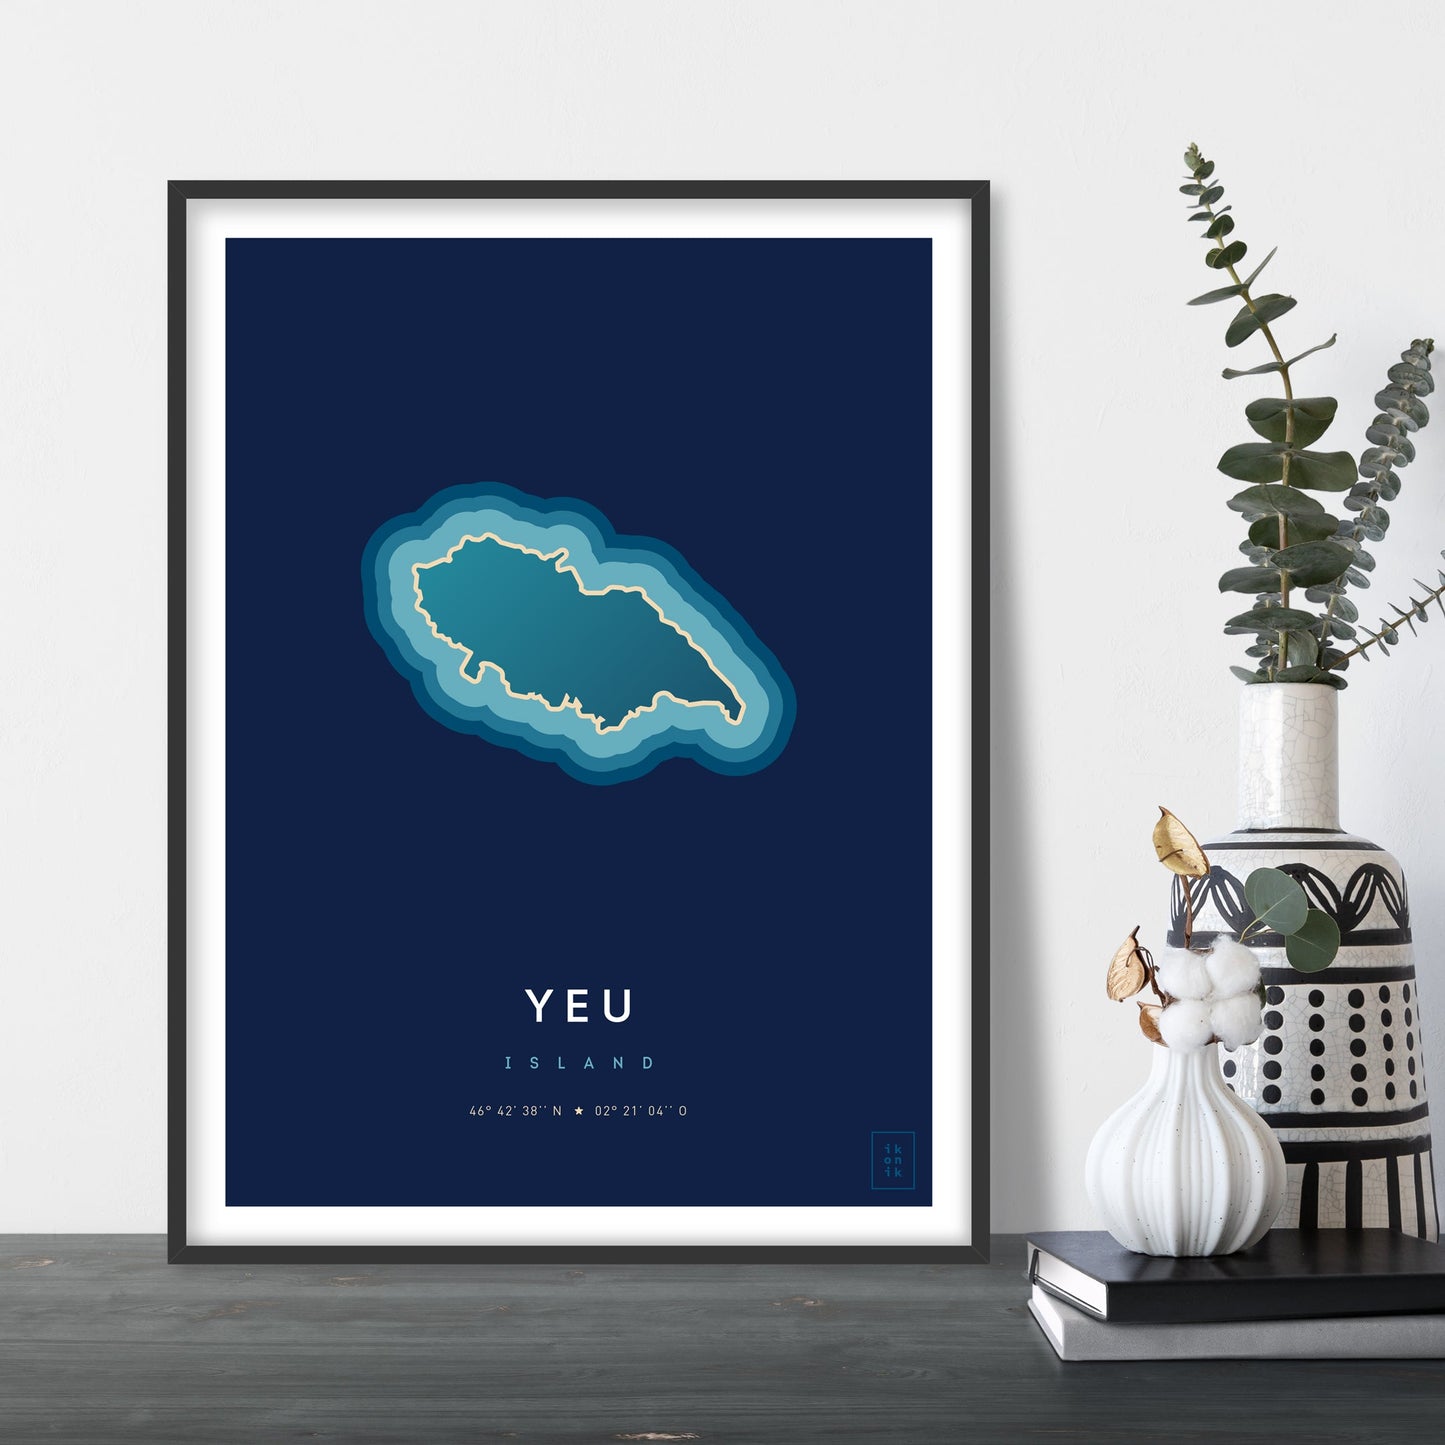 Affiche de l'île d'Yeu